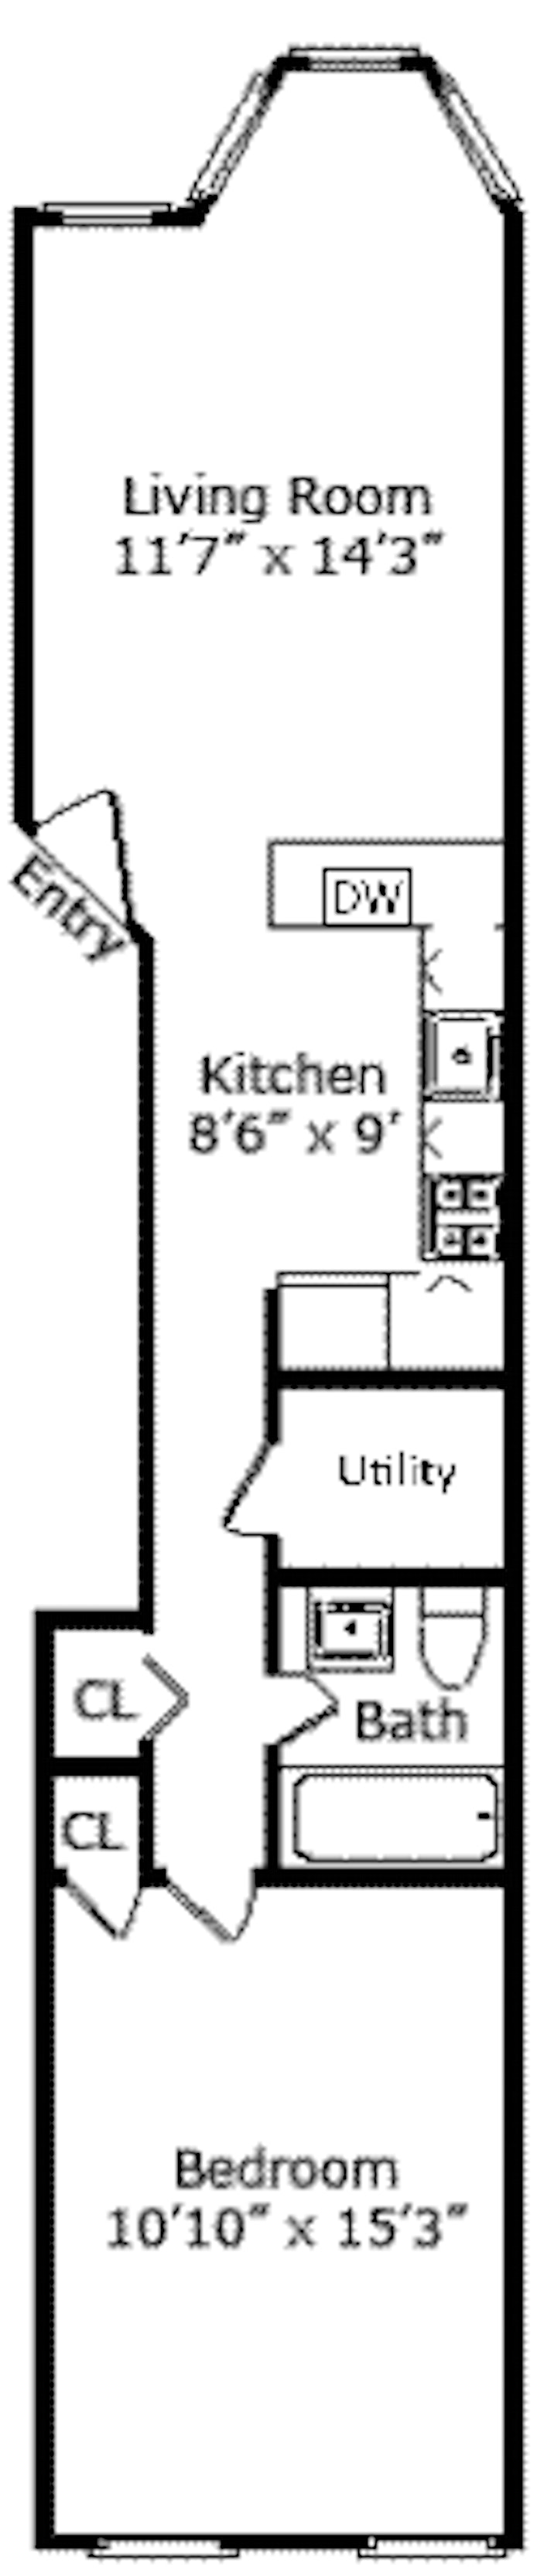 Floorplan for 593 President Street, 2L